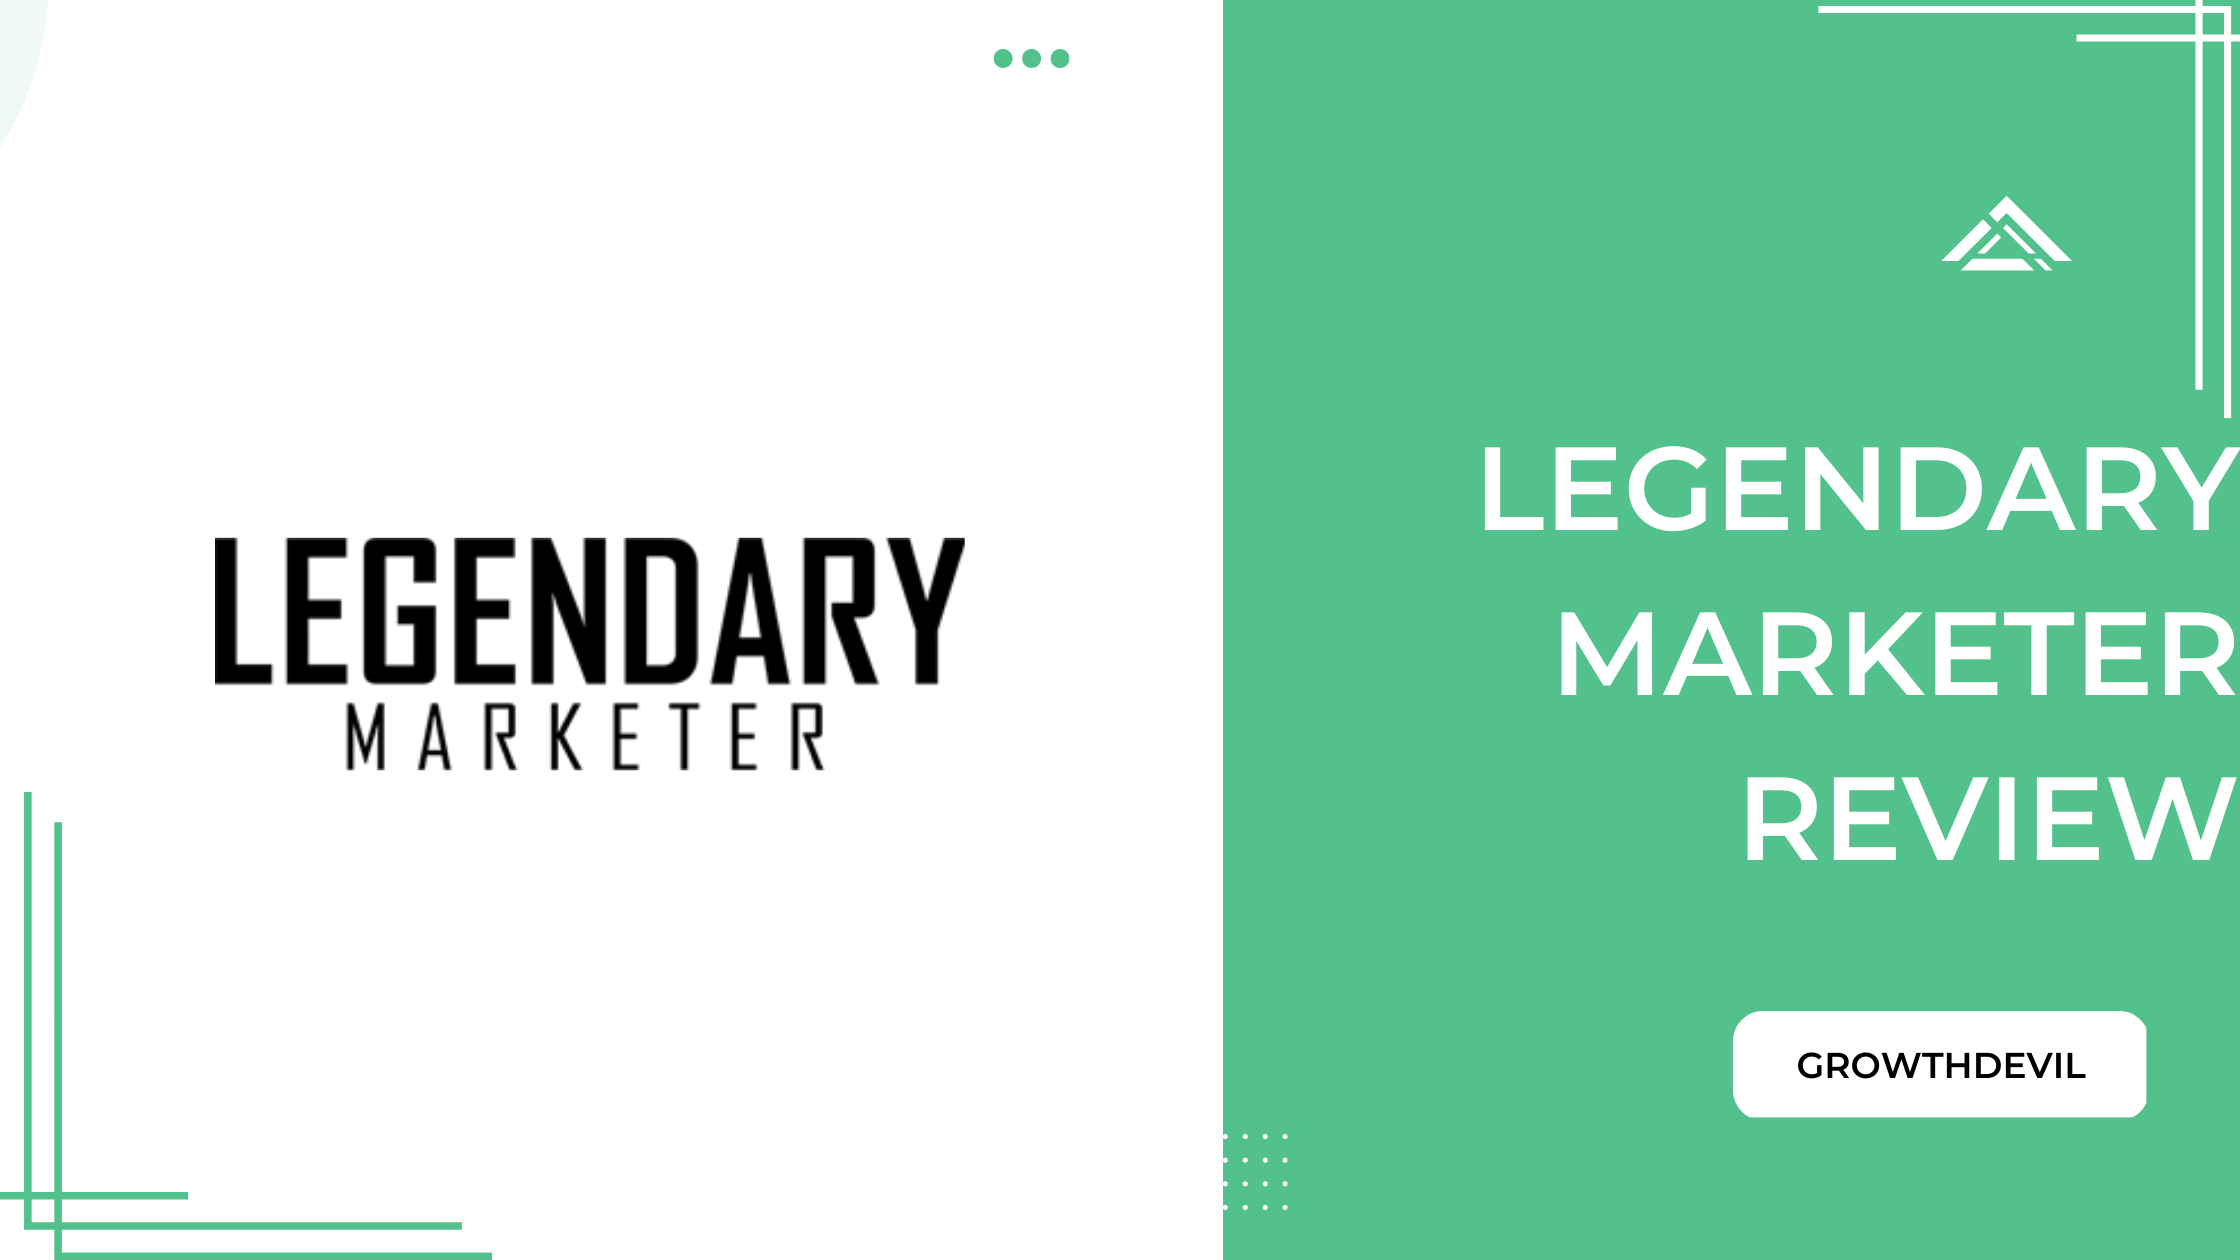 Legendary Marketer Review - GrowthDevil